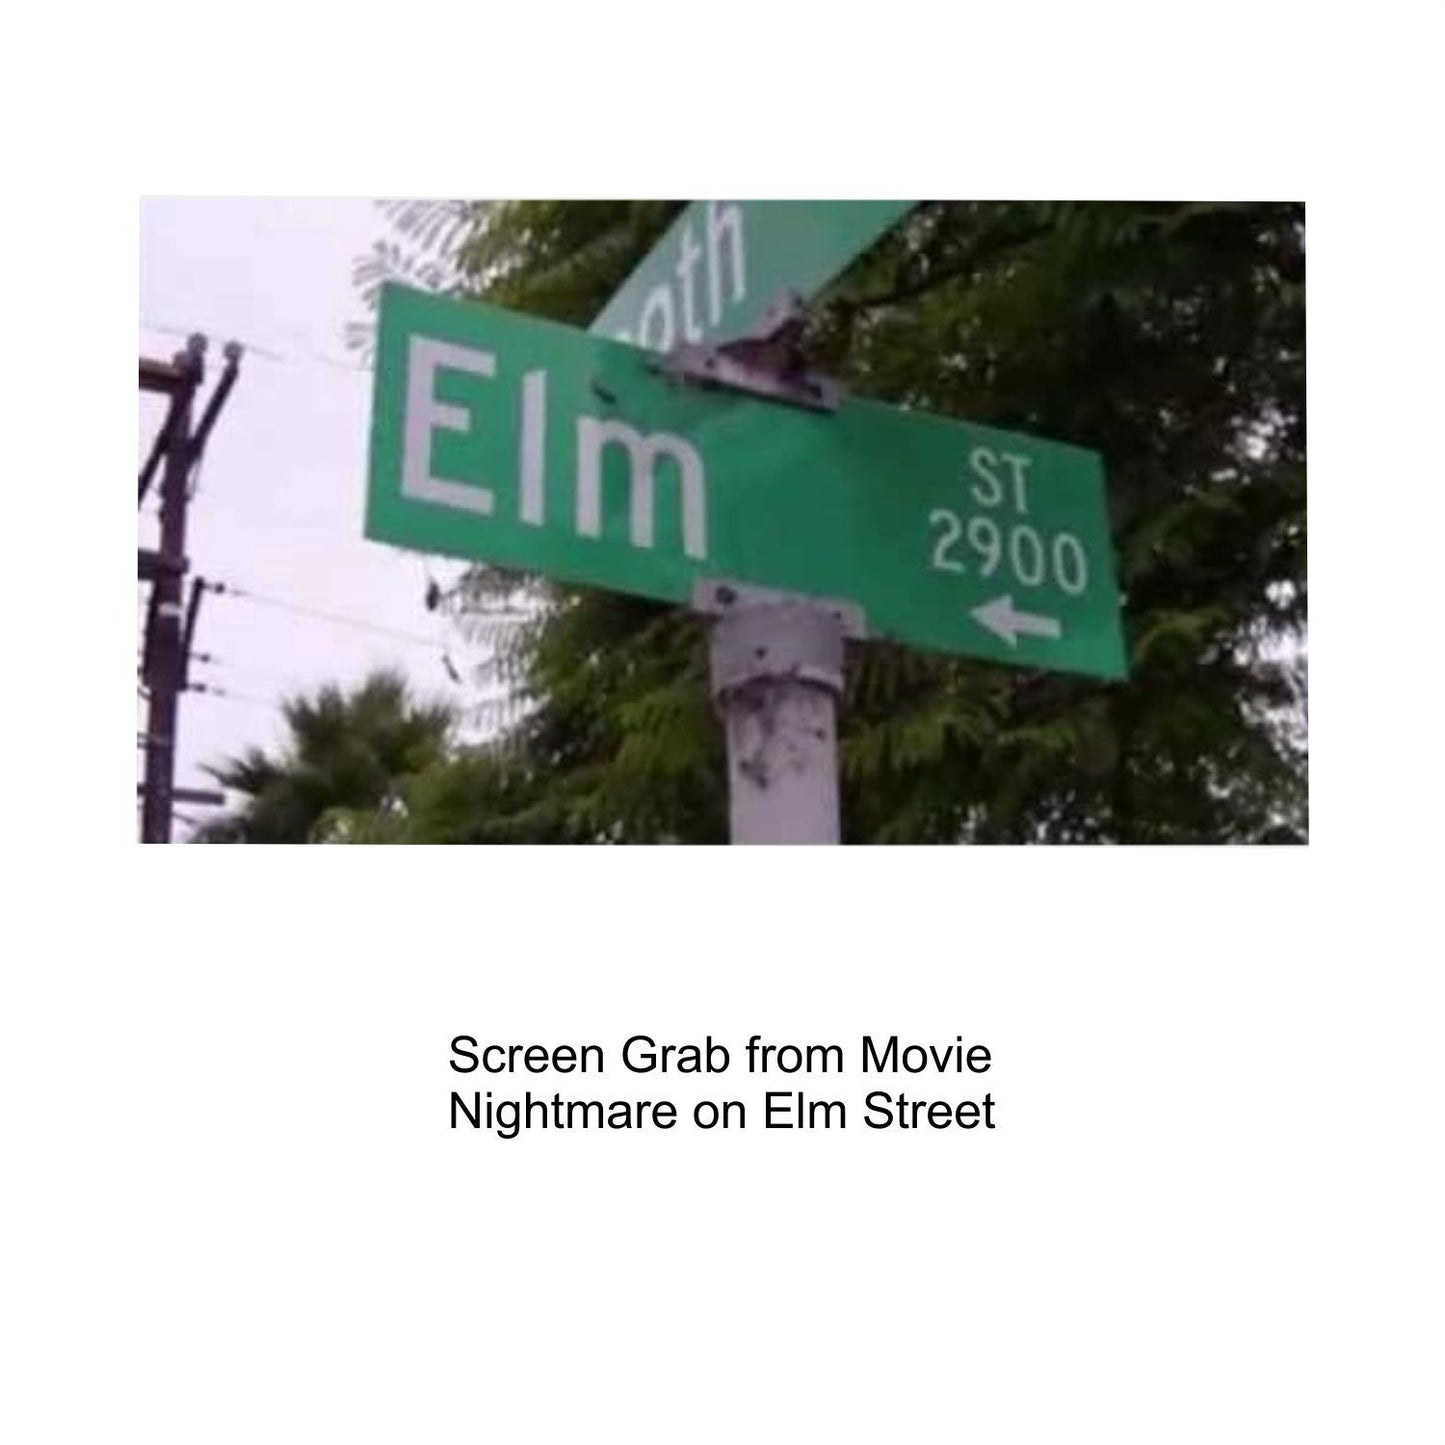 Nightmare on Elm Street - Elm St Sign